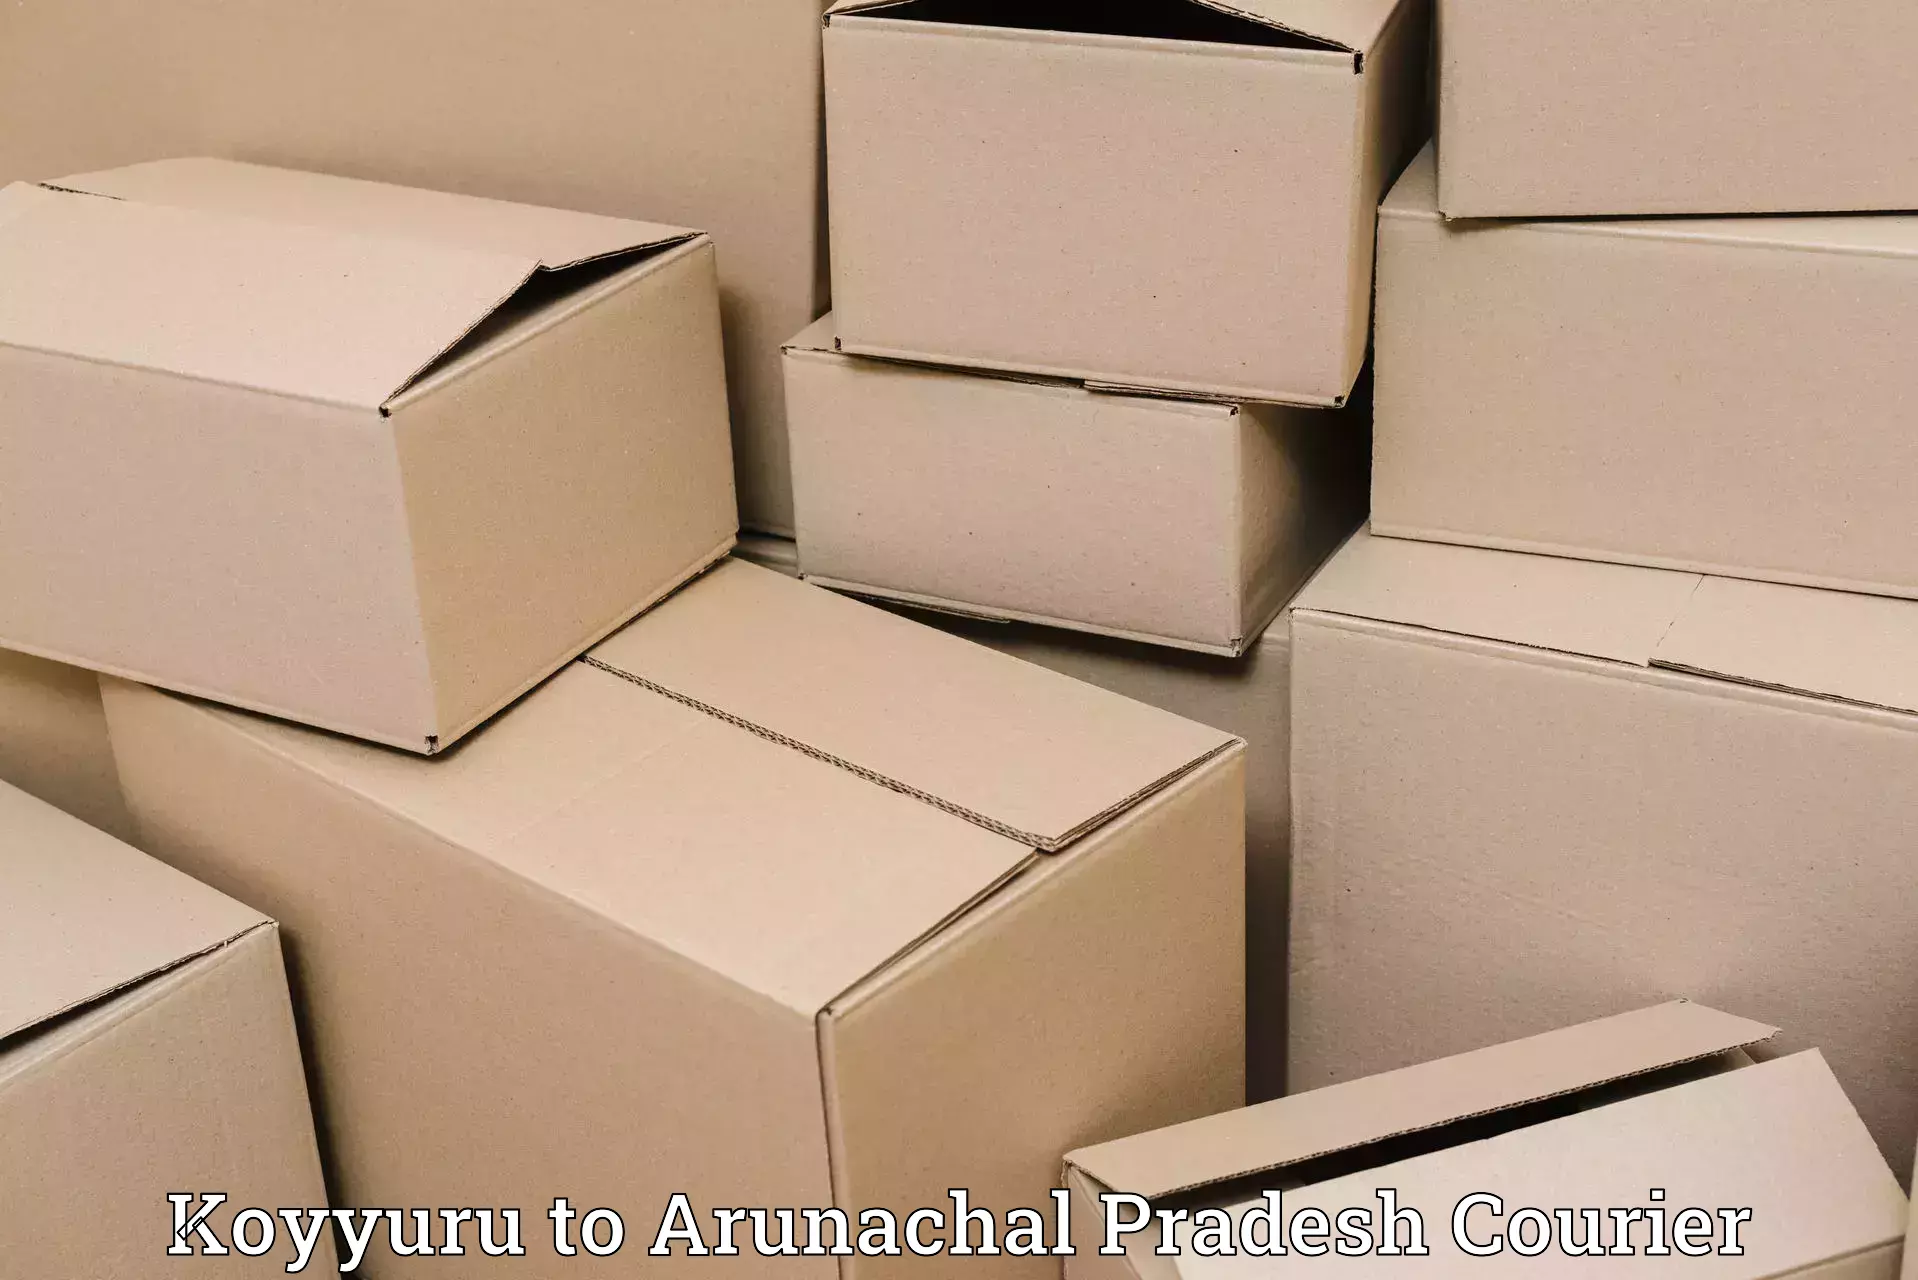 Shipping and handling Koyyuru to Yingkiong